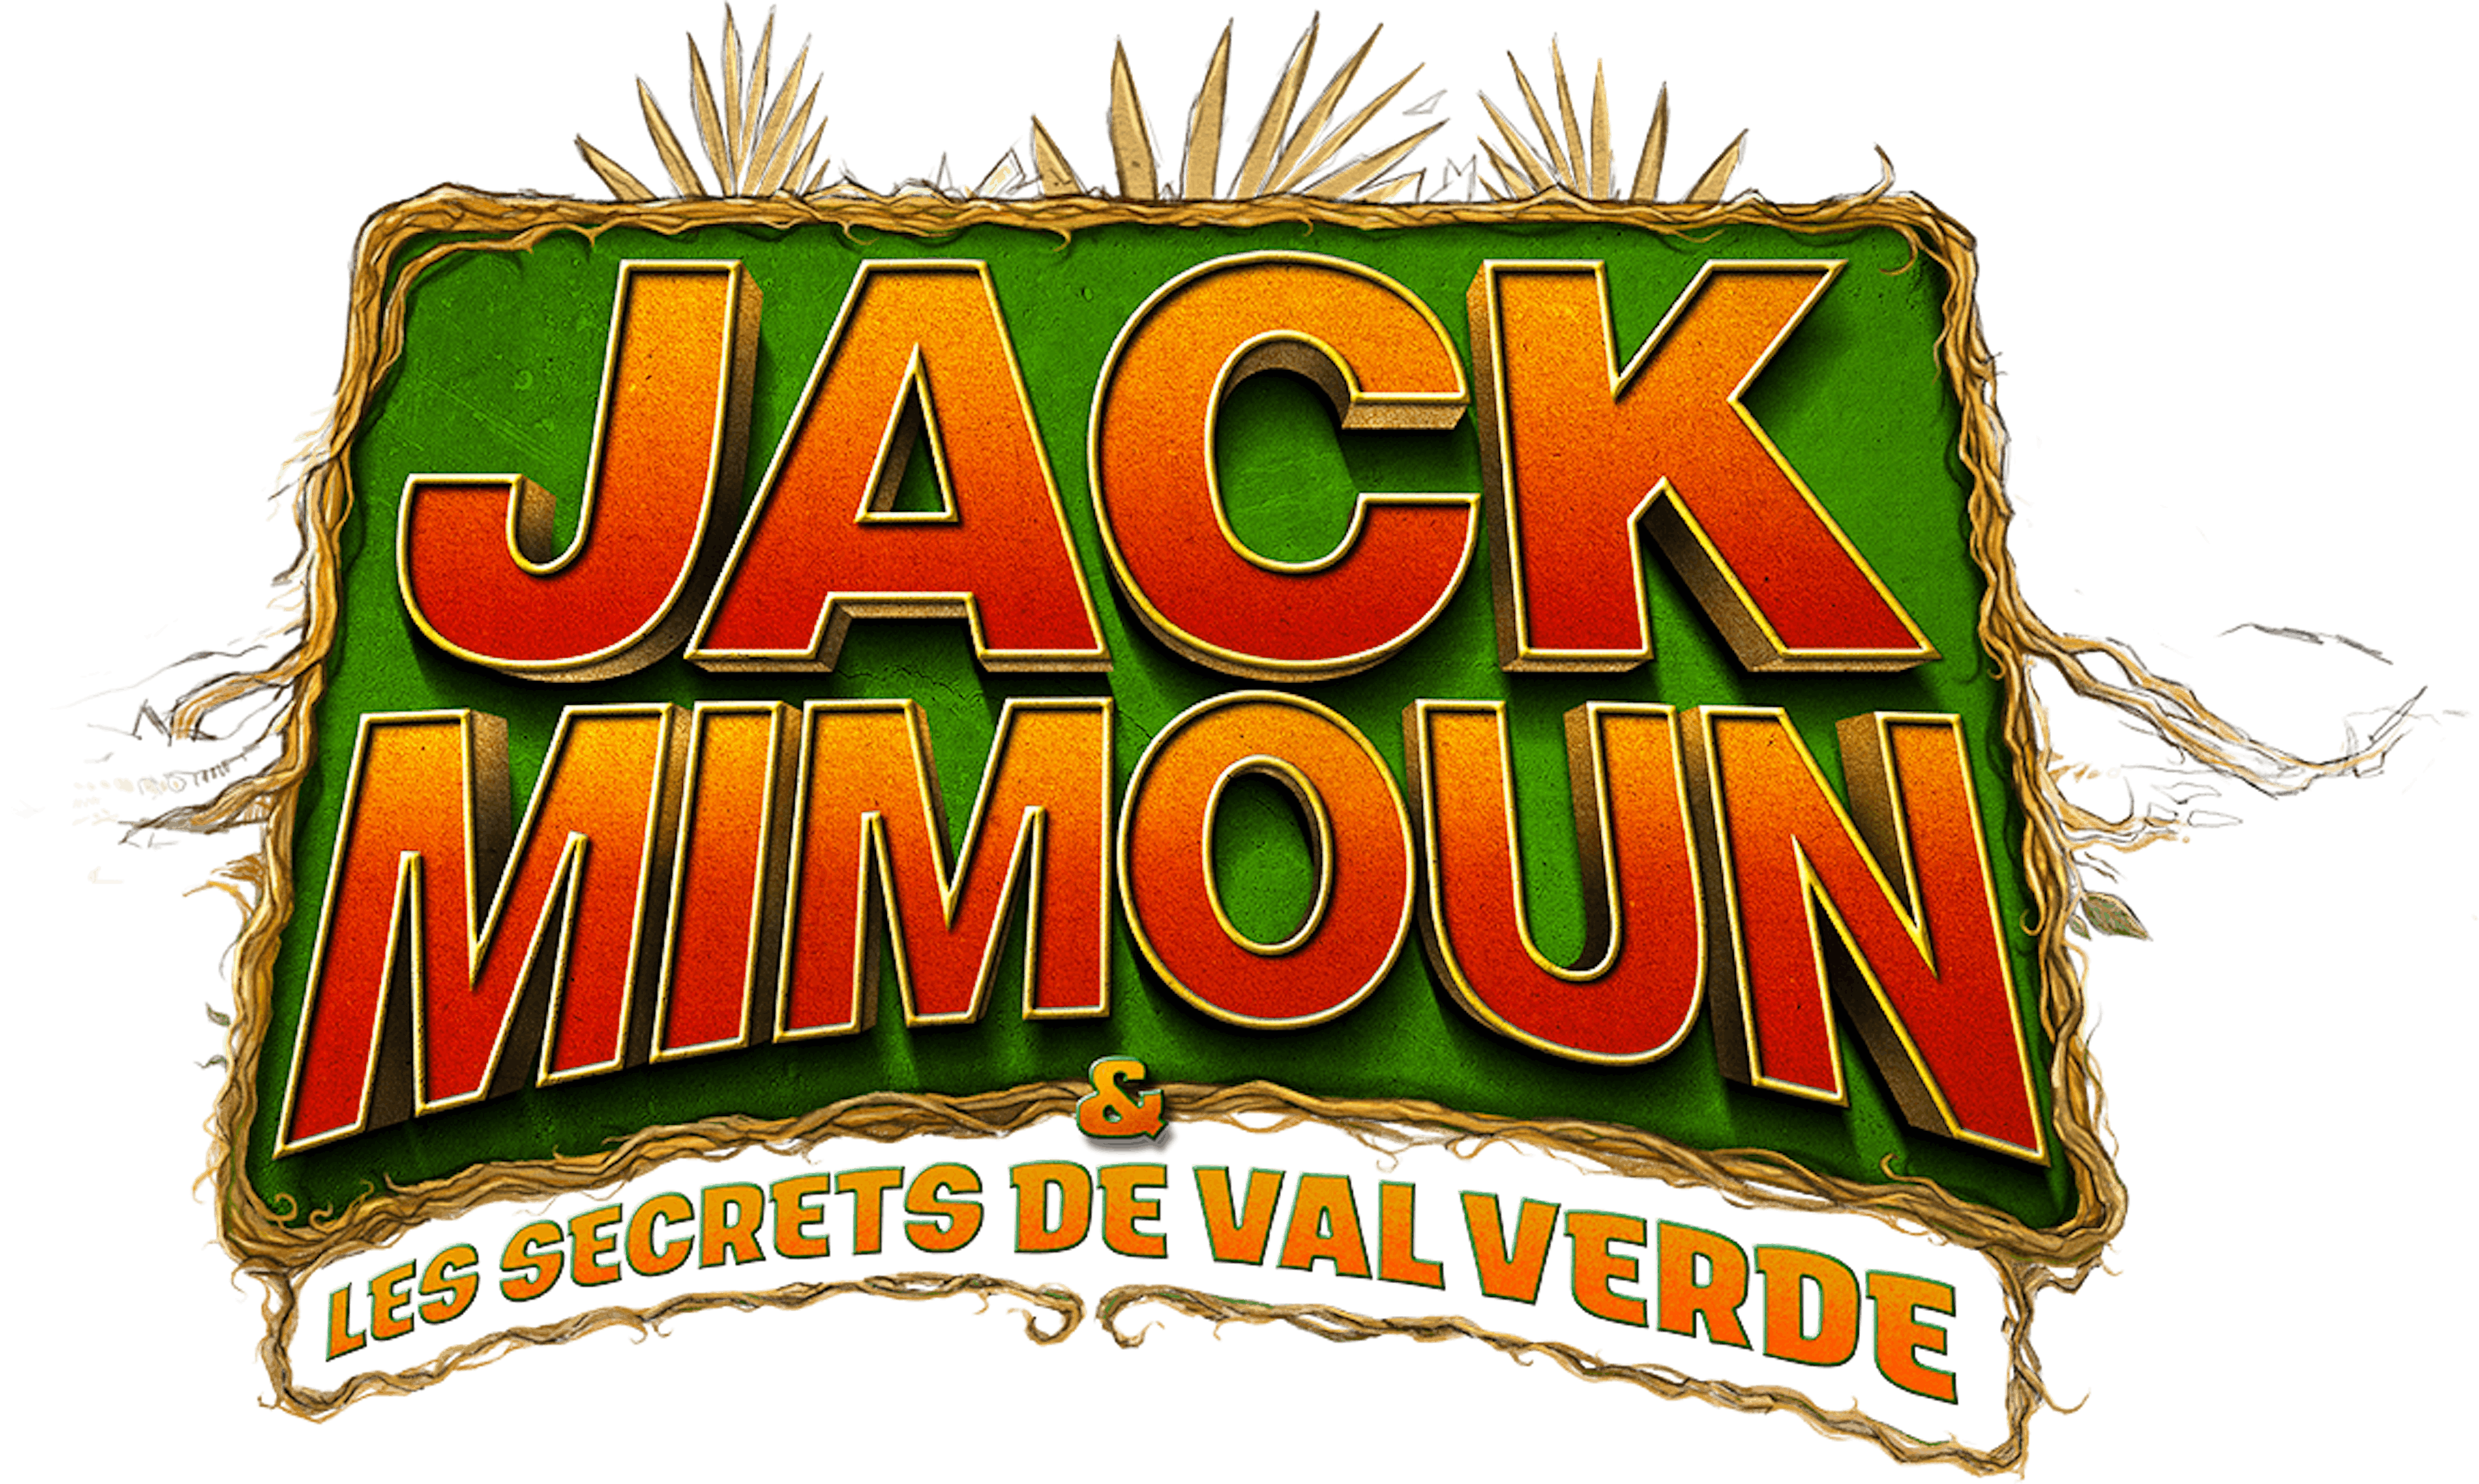 Jack Mimoun et les secrets de Val Verde